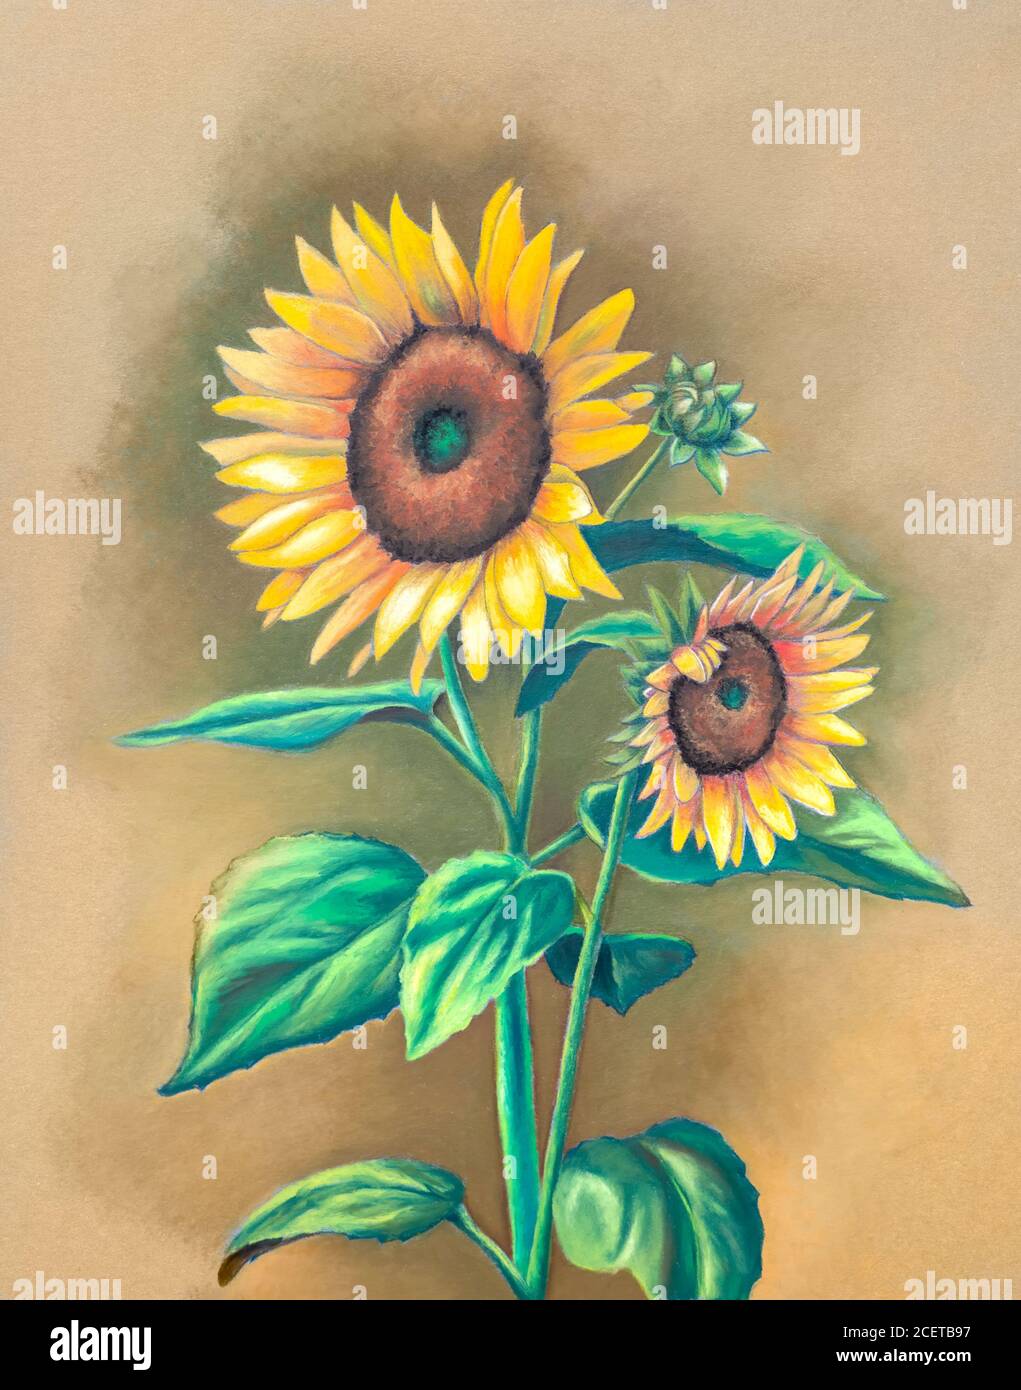 Öl Pastell Malerei von einigen Sonnenblumen in voller Blüte. Traditionelle Illustration auf Papier. Stockfoto